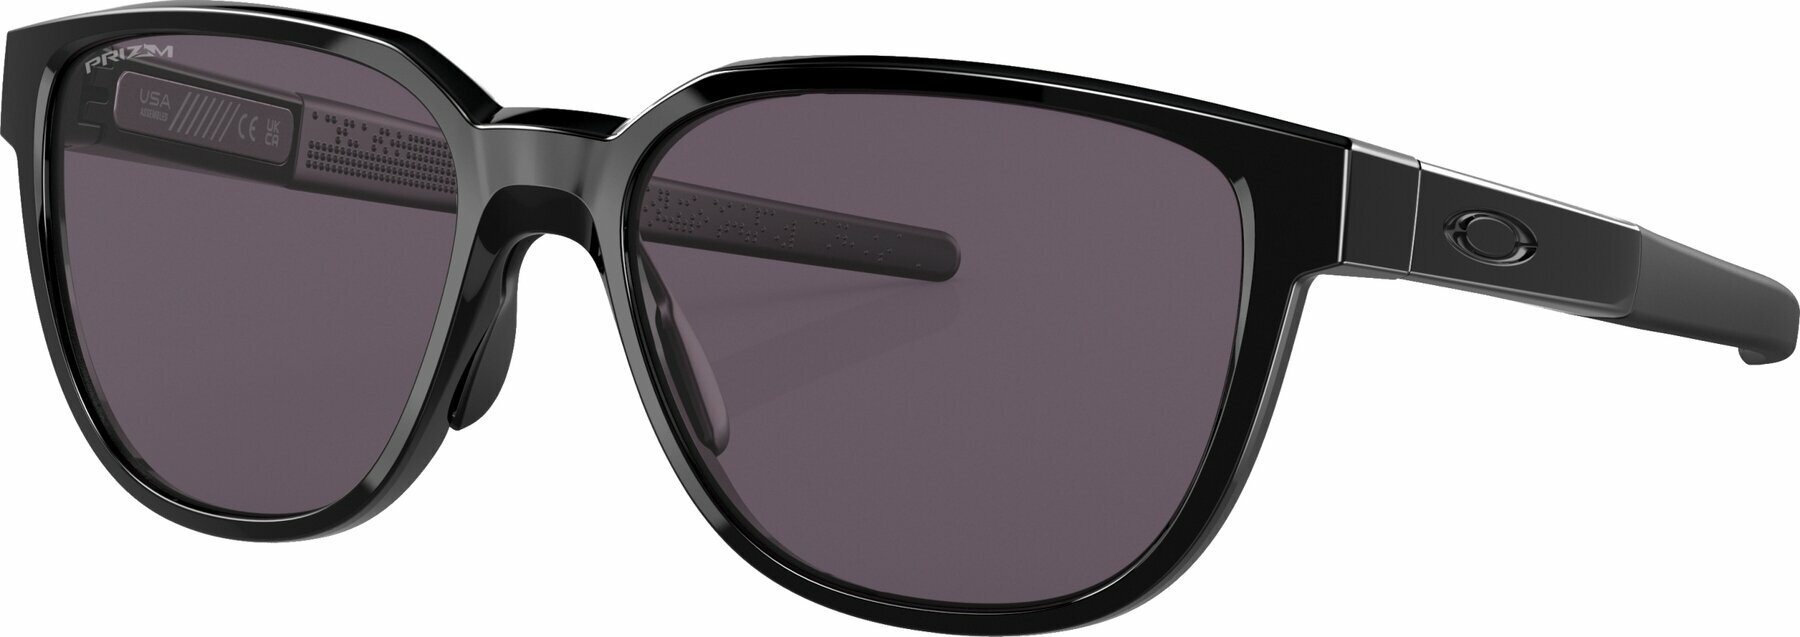 Lifestyle naočale Oakley Actuator 92500157 Polished Black/Prizm Grey L Lifestyle naočale